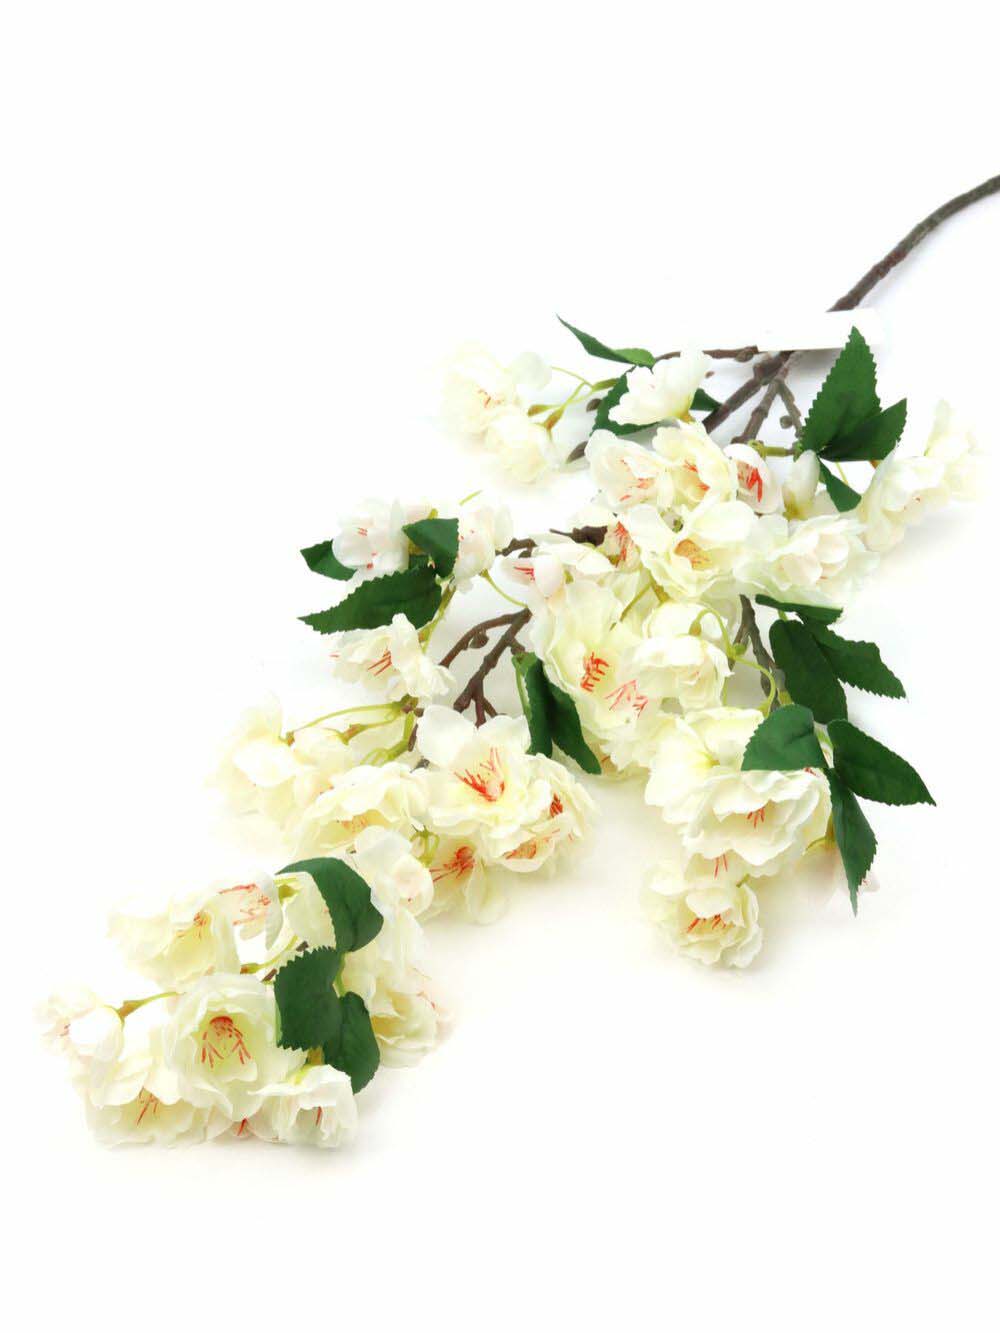 Virágos ág 4, tört fehér színben